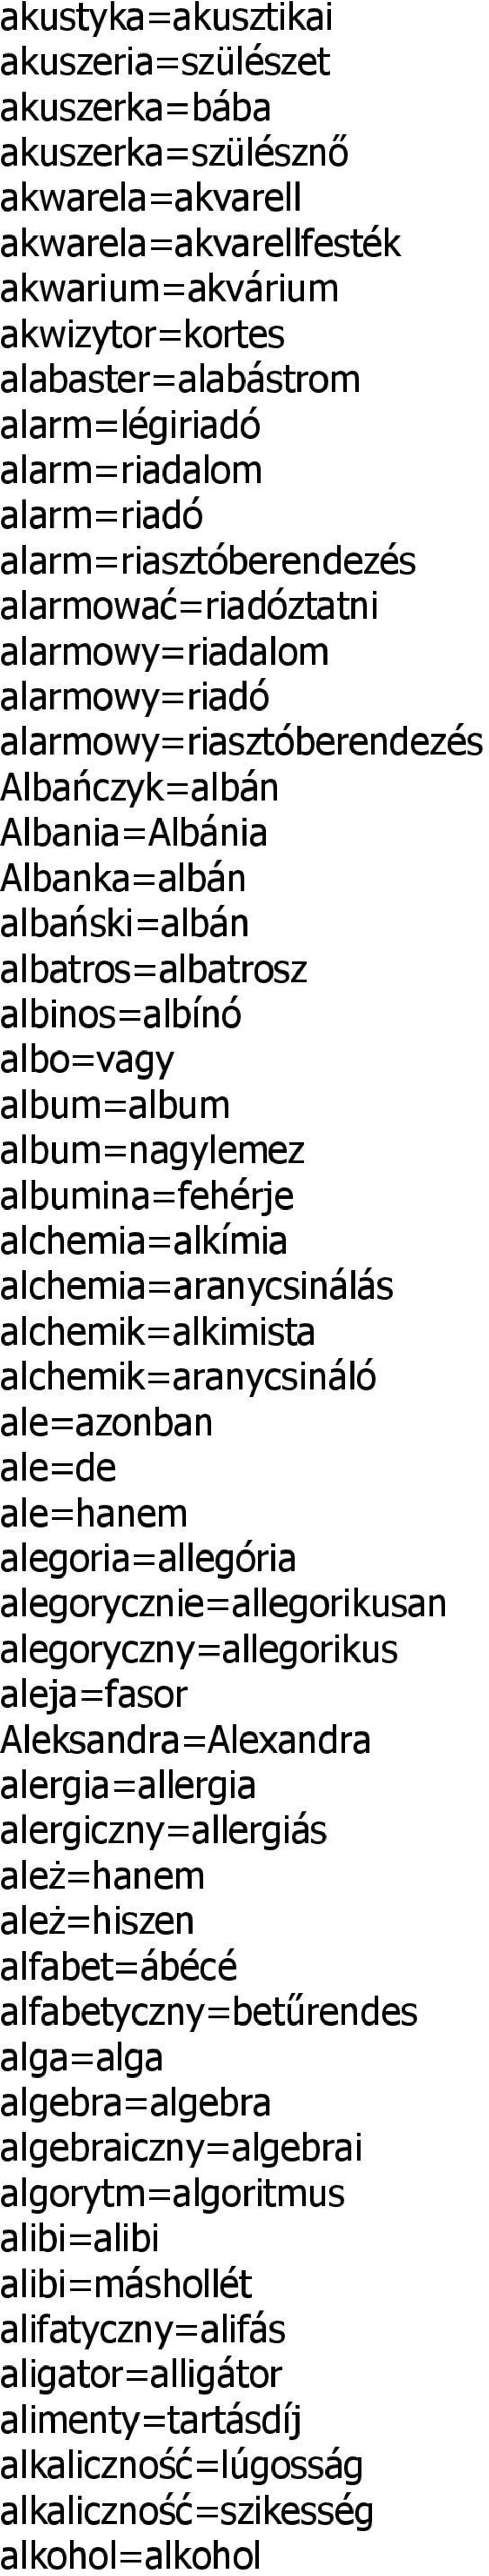 albatros=albatrosz albinos=albínó albo=vagy album=album album=nagylemez albumina=fehérje alchemia=alkímia alchemia=aranycsinálás alchemik=alkimista alchemik=aranycsináló ale=azonban ale=de ale=hanem